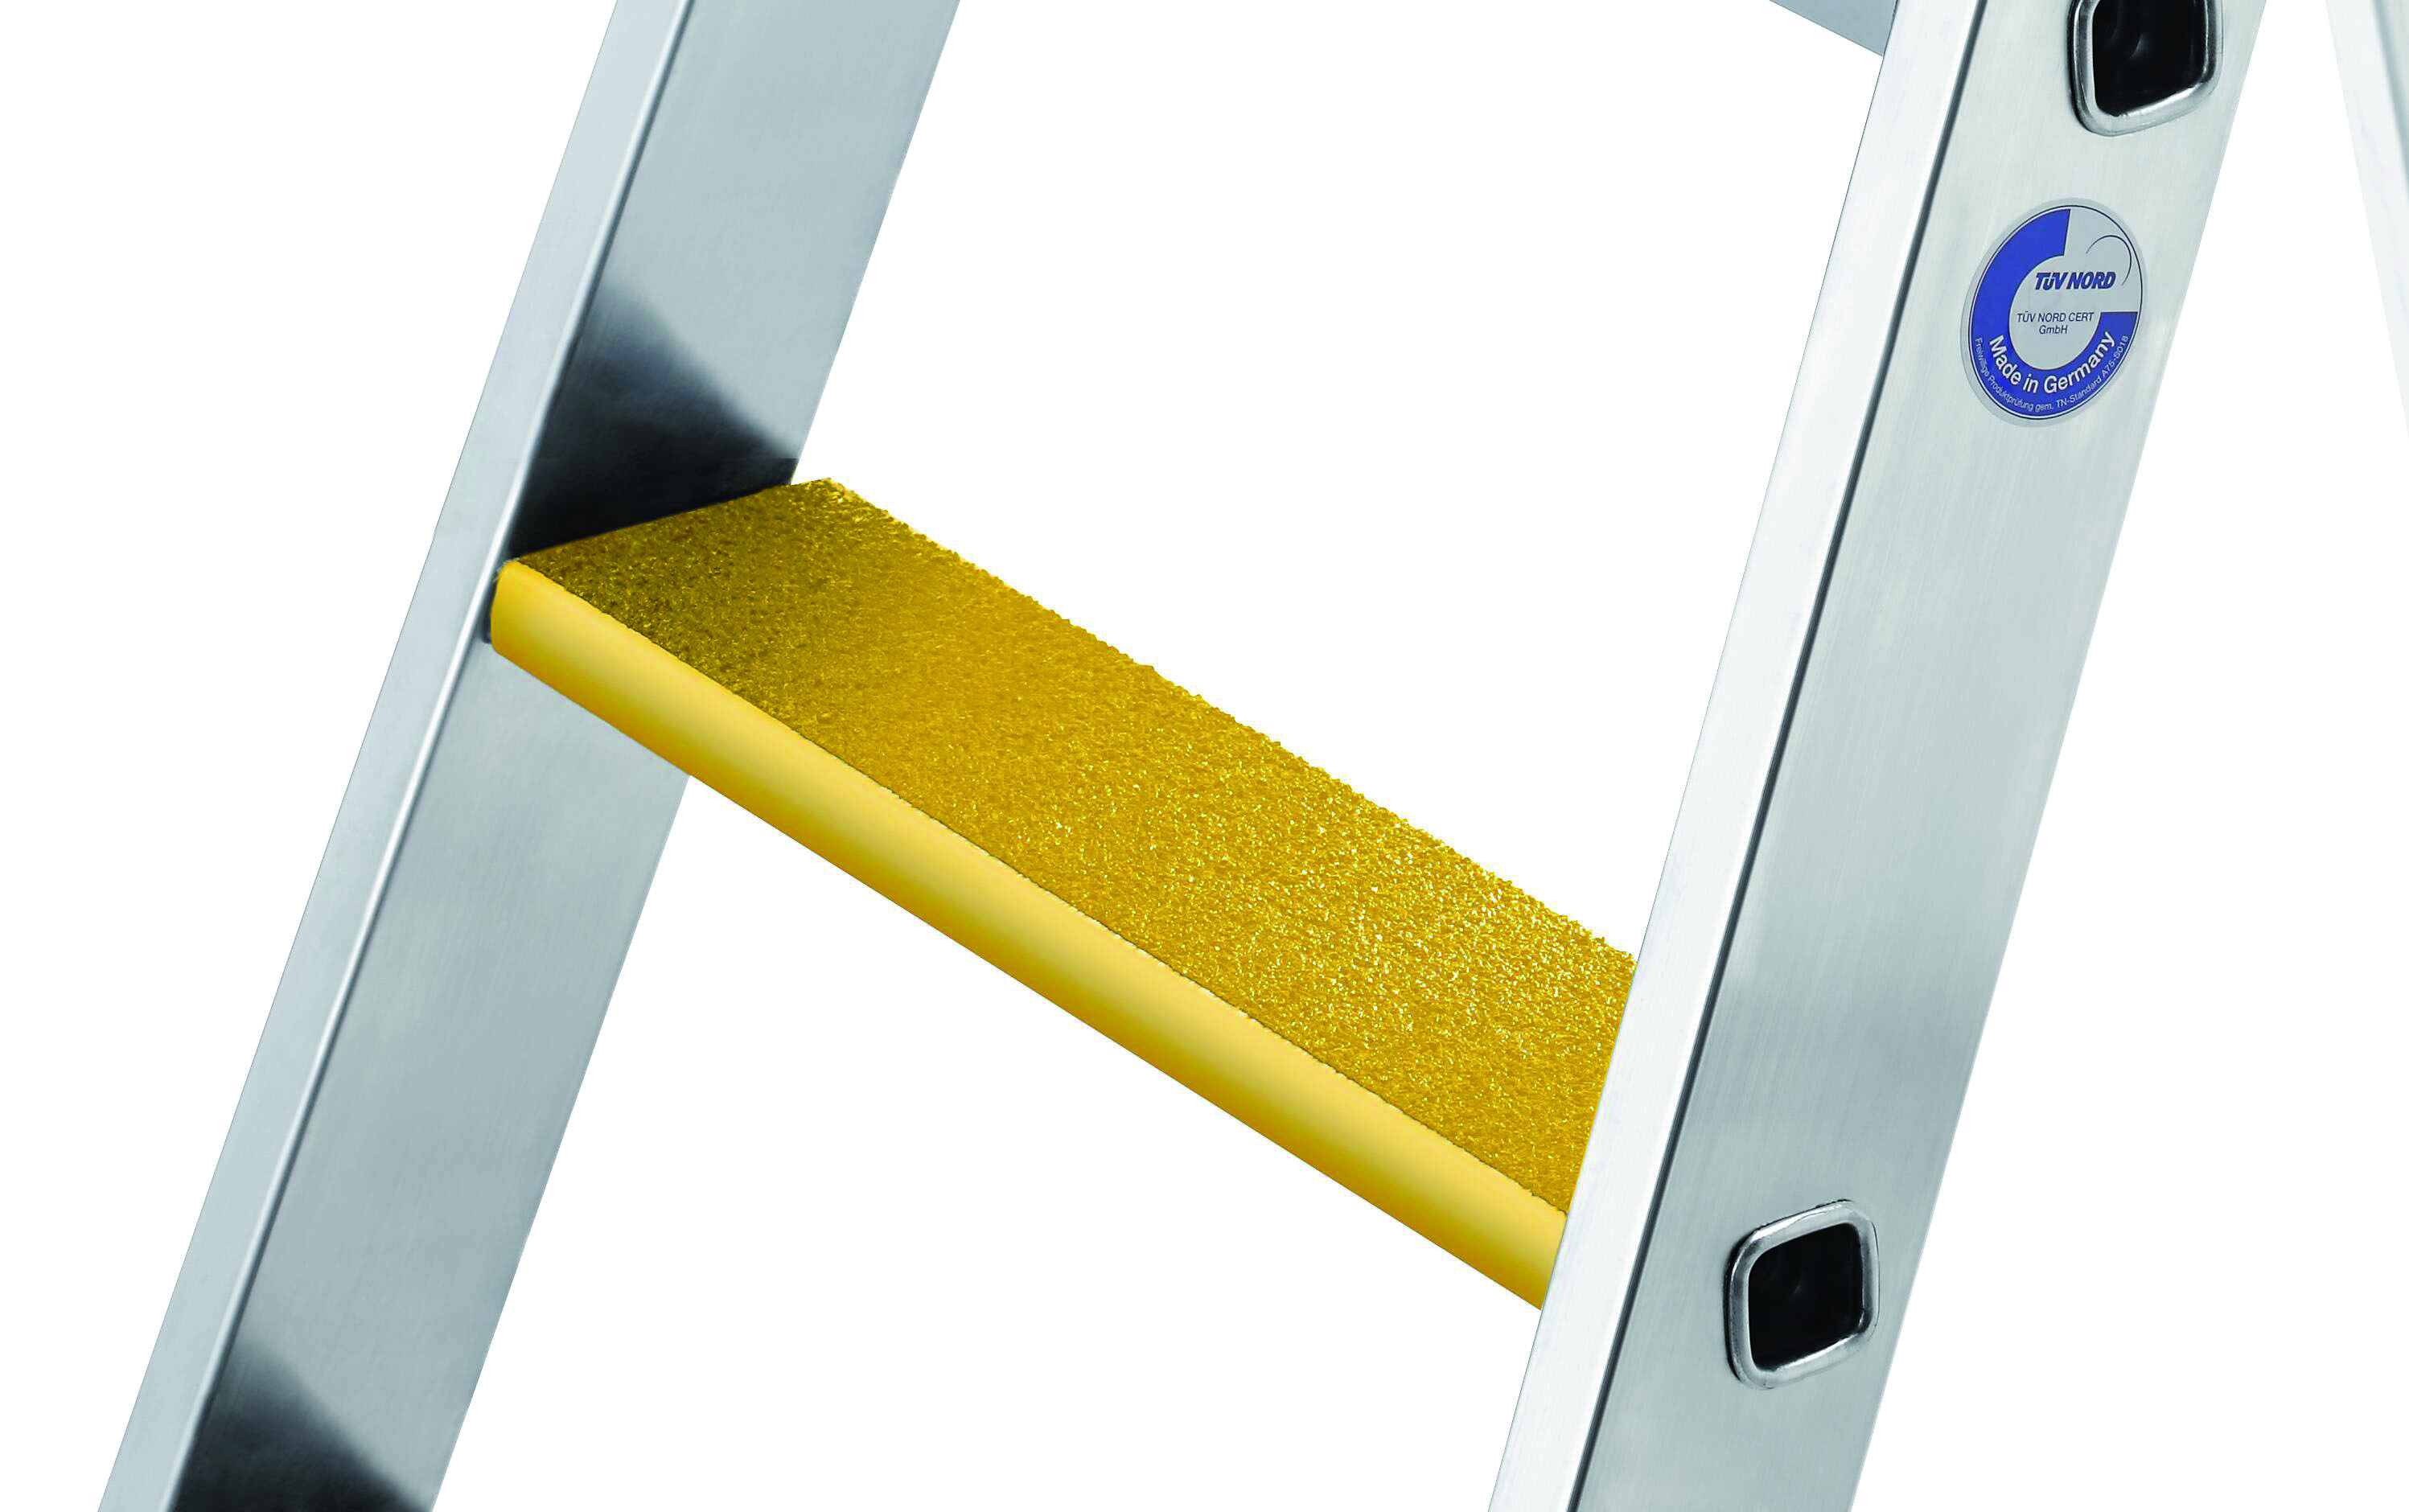 Nachrüstsatz Trittauflage clip-step R 13 gelb, 638 mm